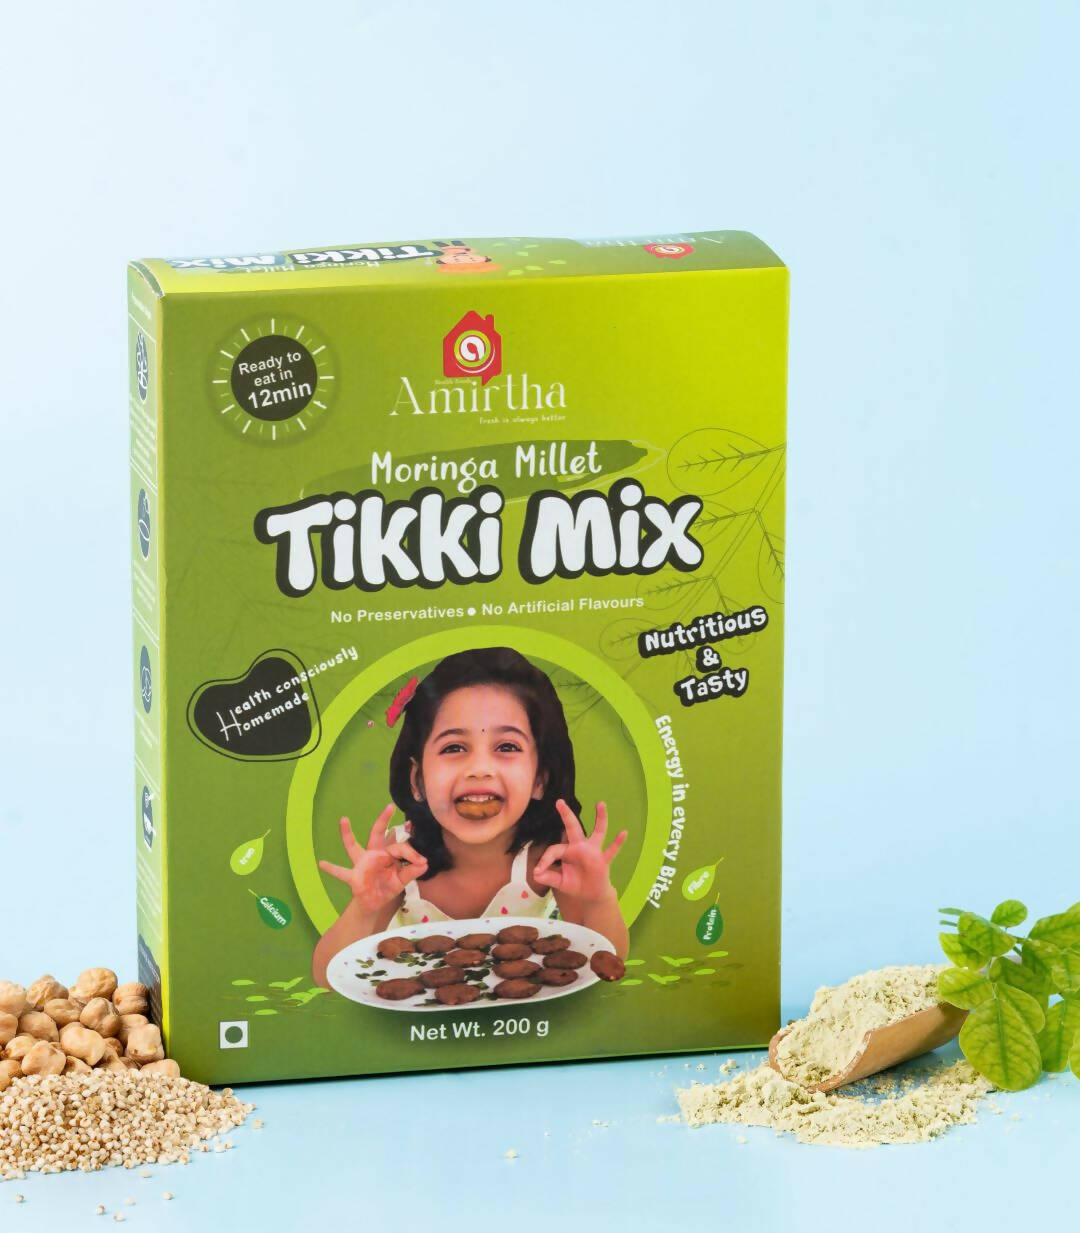 Moringa Millet Tikki Mix